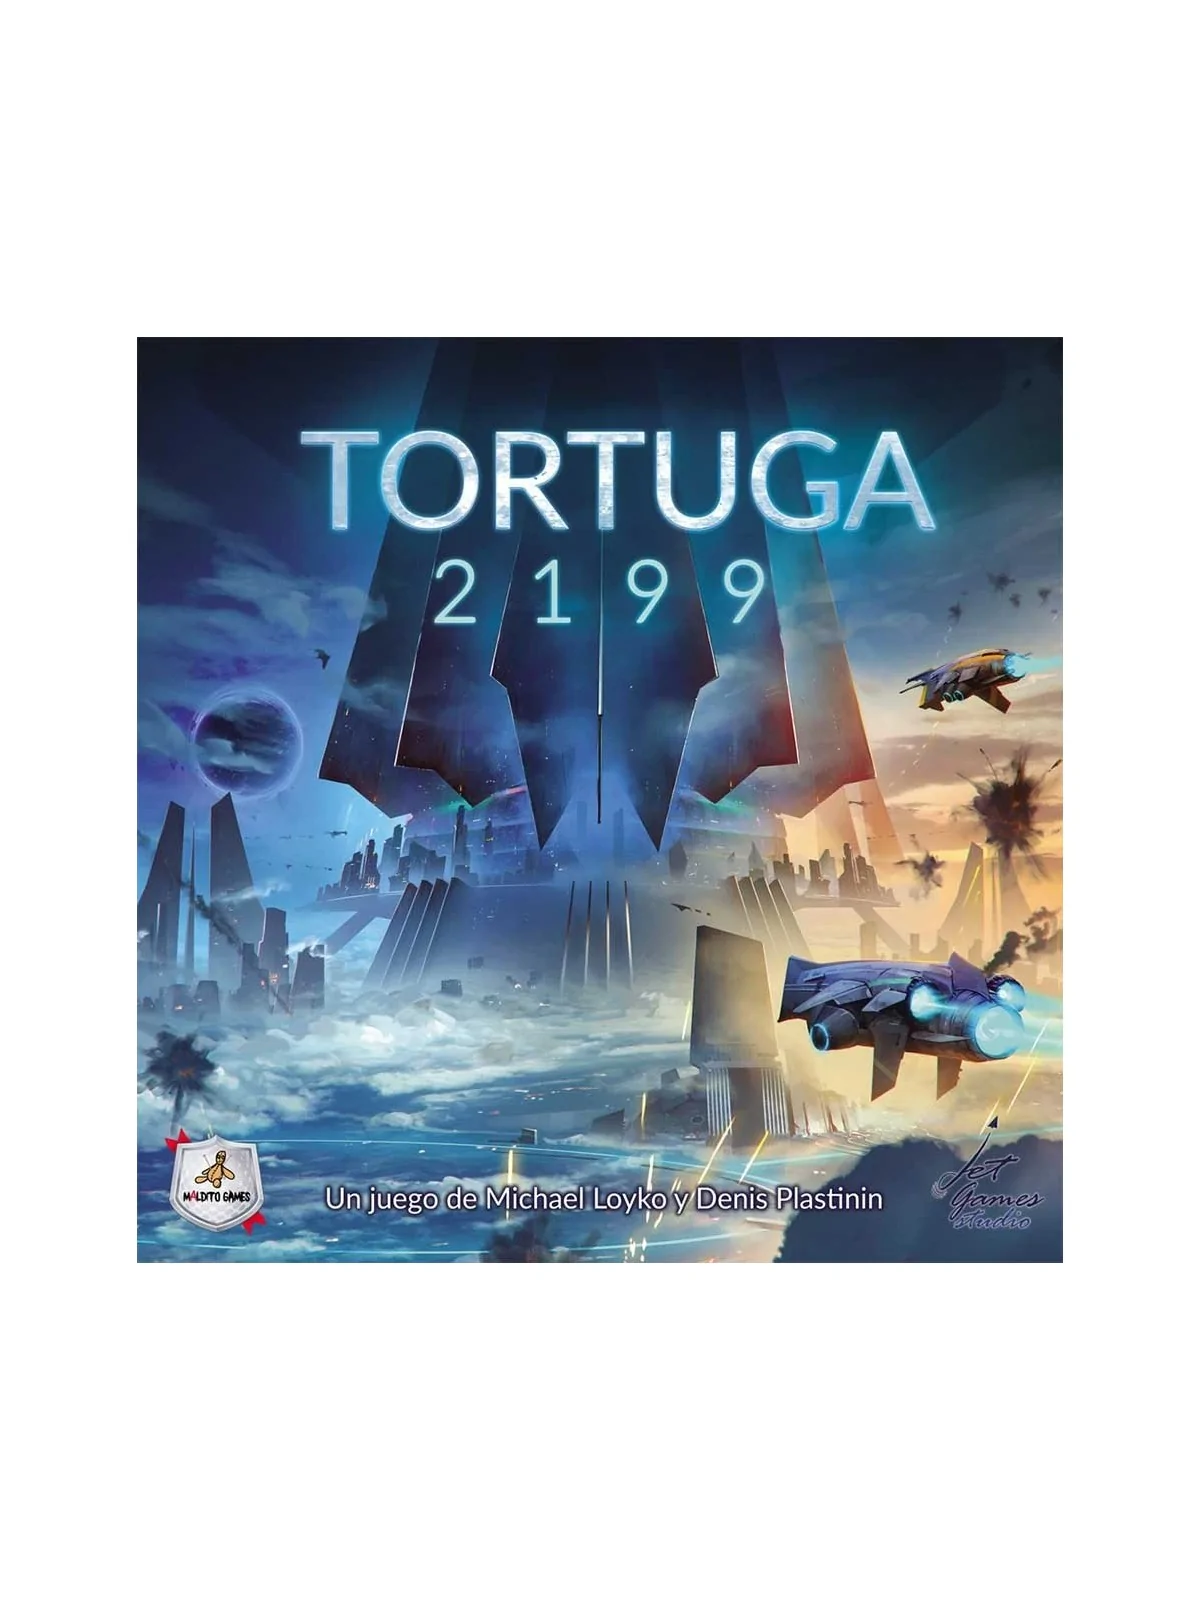 Comprar Tortuga 2199 barato al mejor precio 45,00 € de Maldito Games